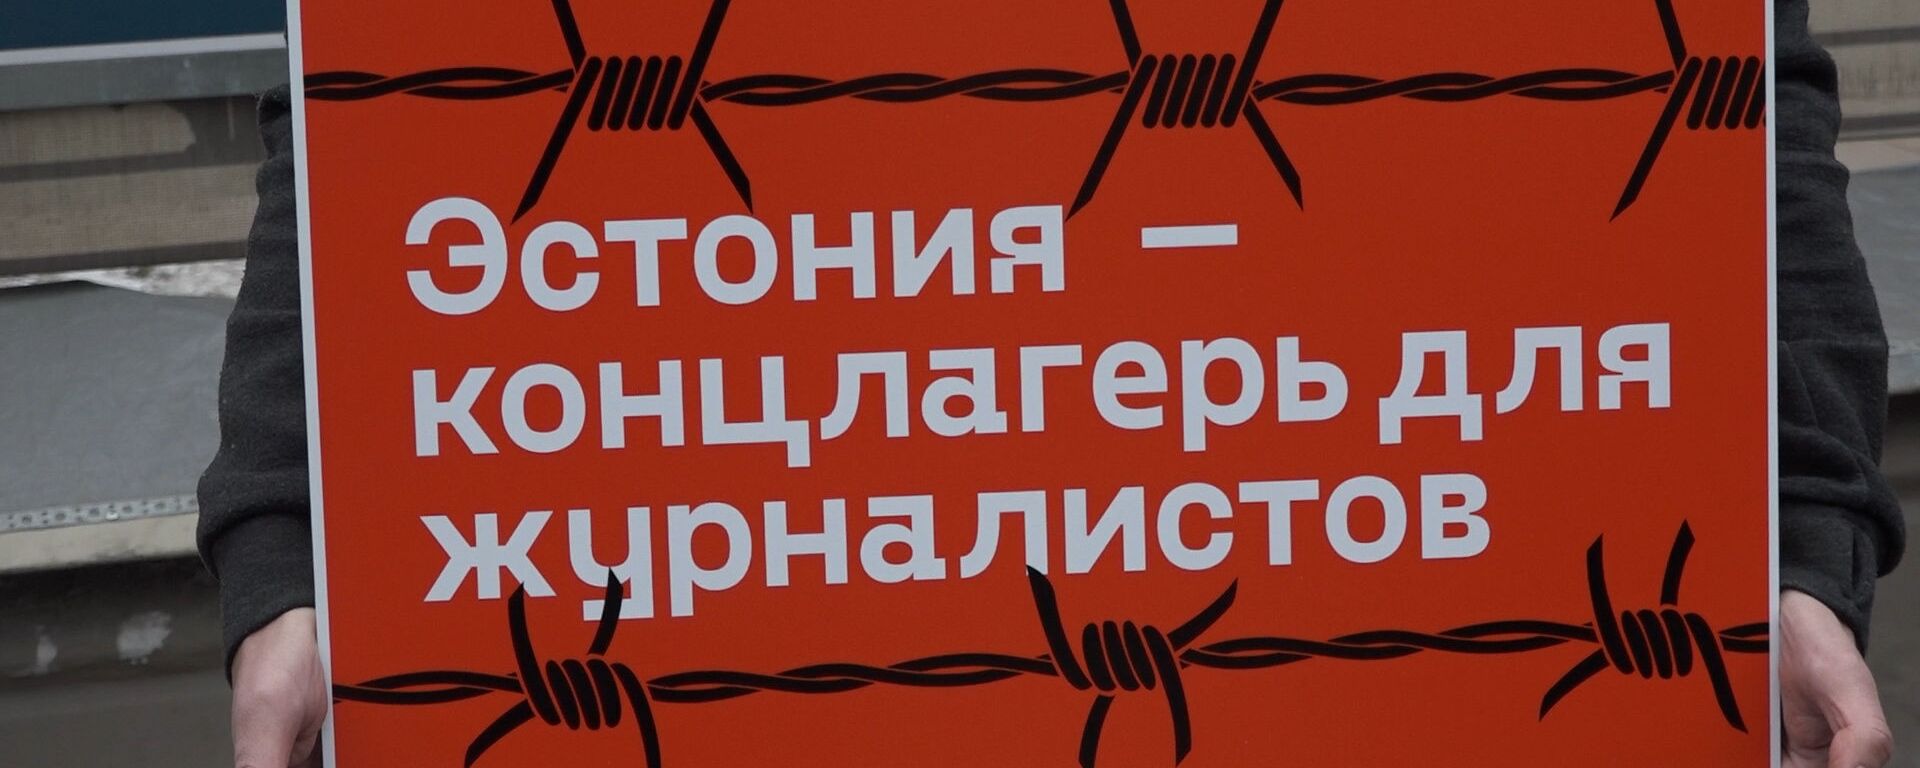 Эстония - концлагерь для журналистов: пикет в поддержку эстонского Sputnik в Москве - Sputnik Латвия, 1920, 26.02.2020